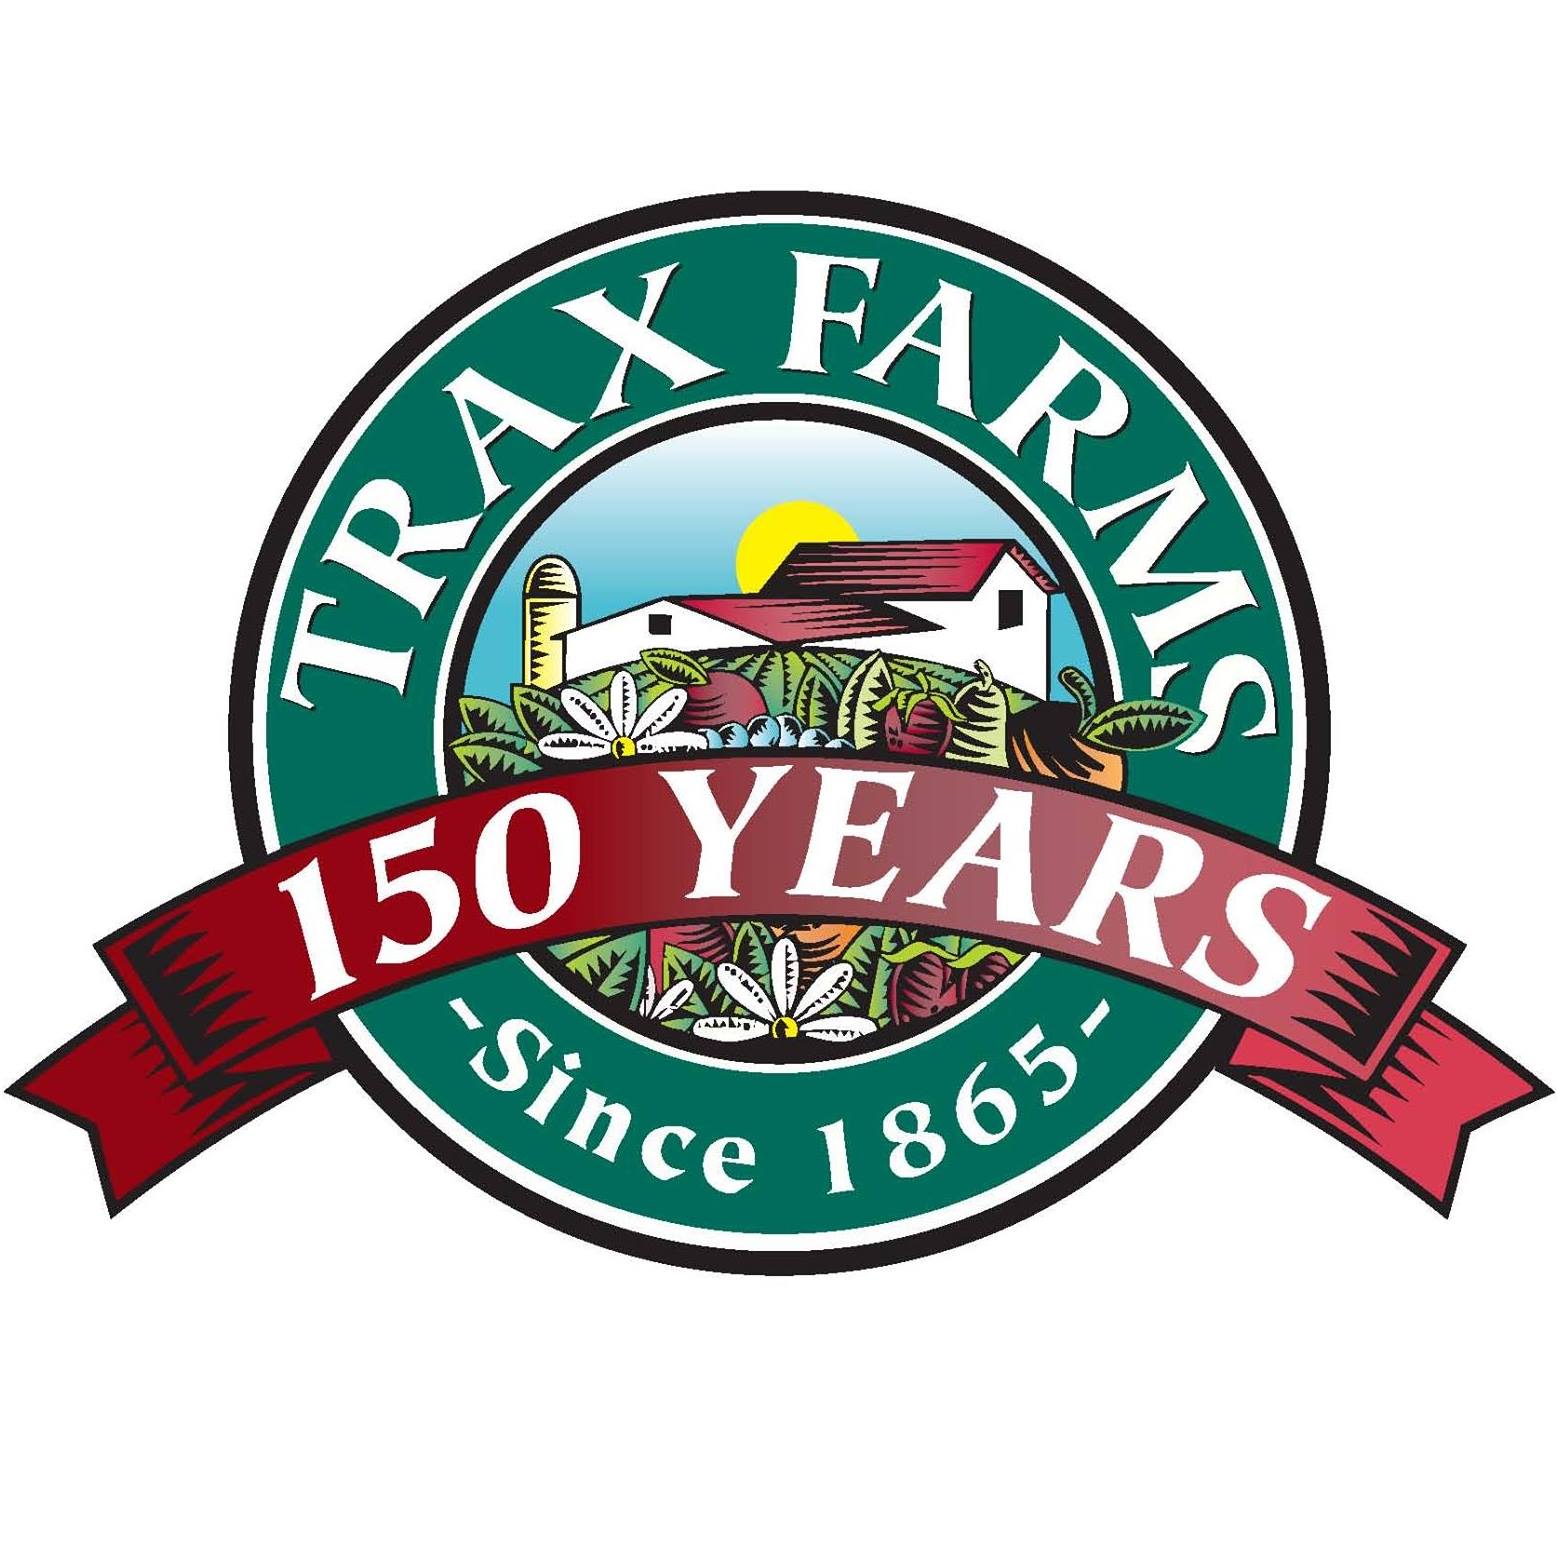 Company logo of Trax Farms Market